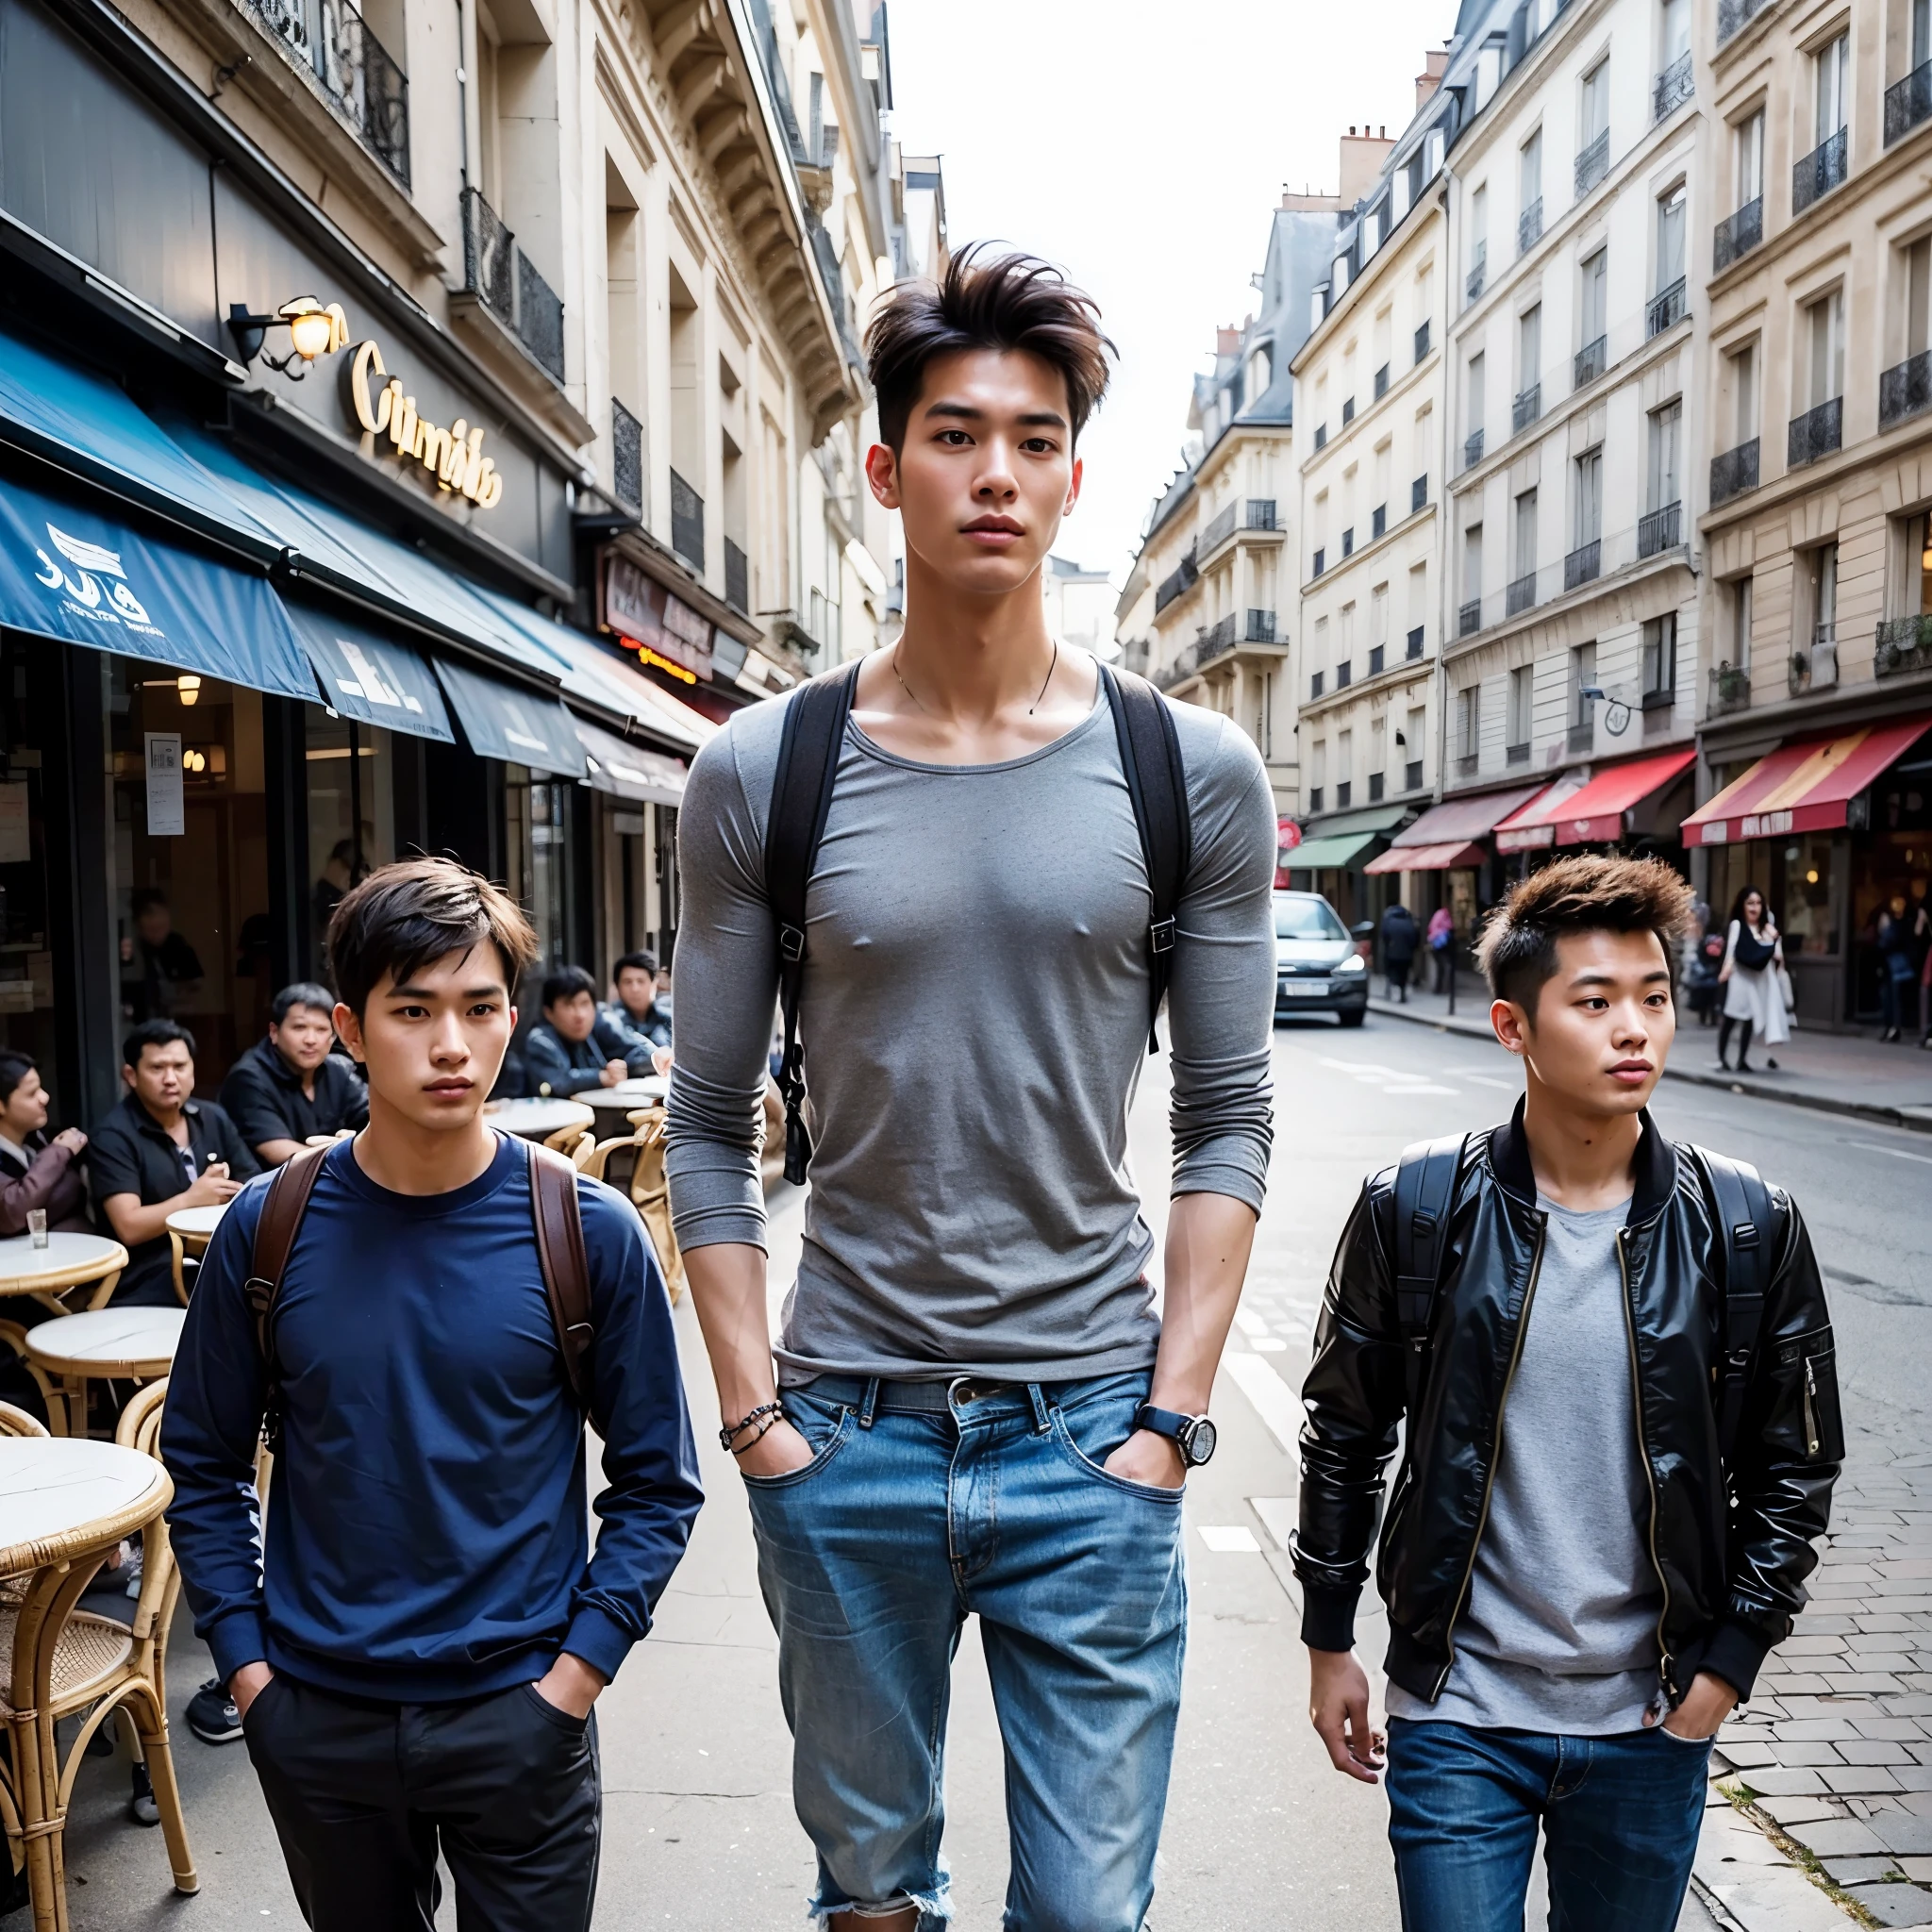 Um jovem gigante de aparência chinesa extremamente alto, bonito, Atlético, penteado curto e limpo, olhos suaves, andando com dois baixinhos pelos cafés parisienses